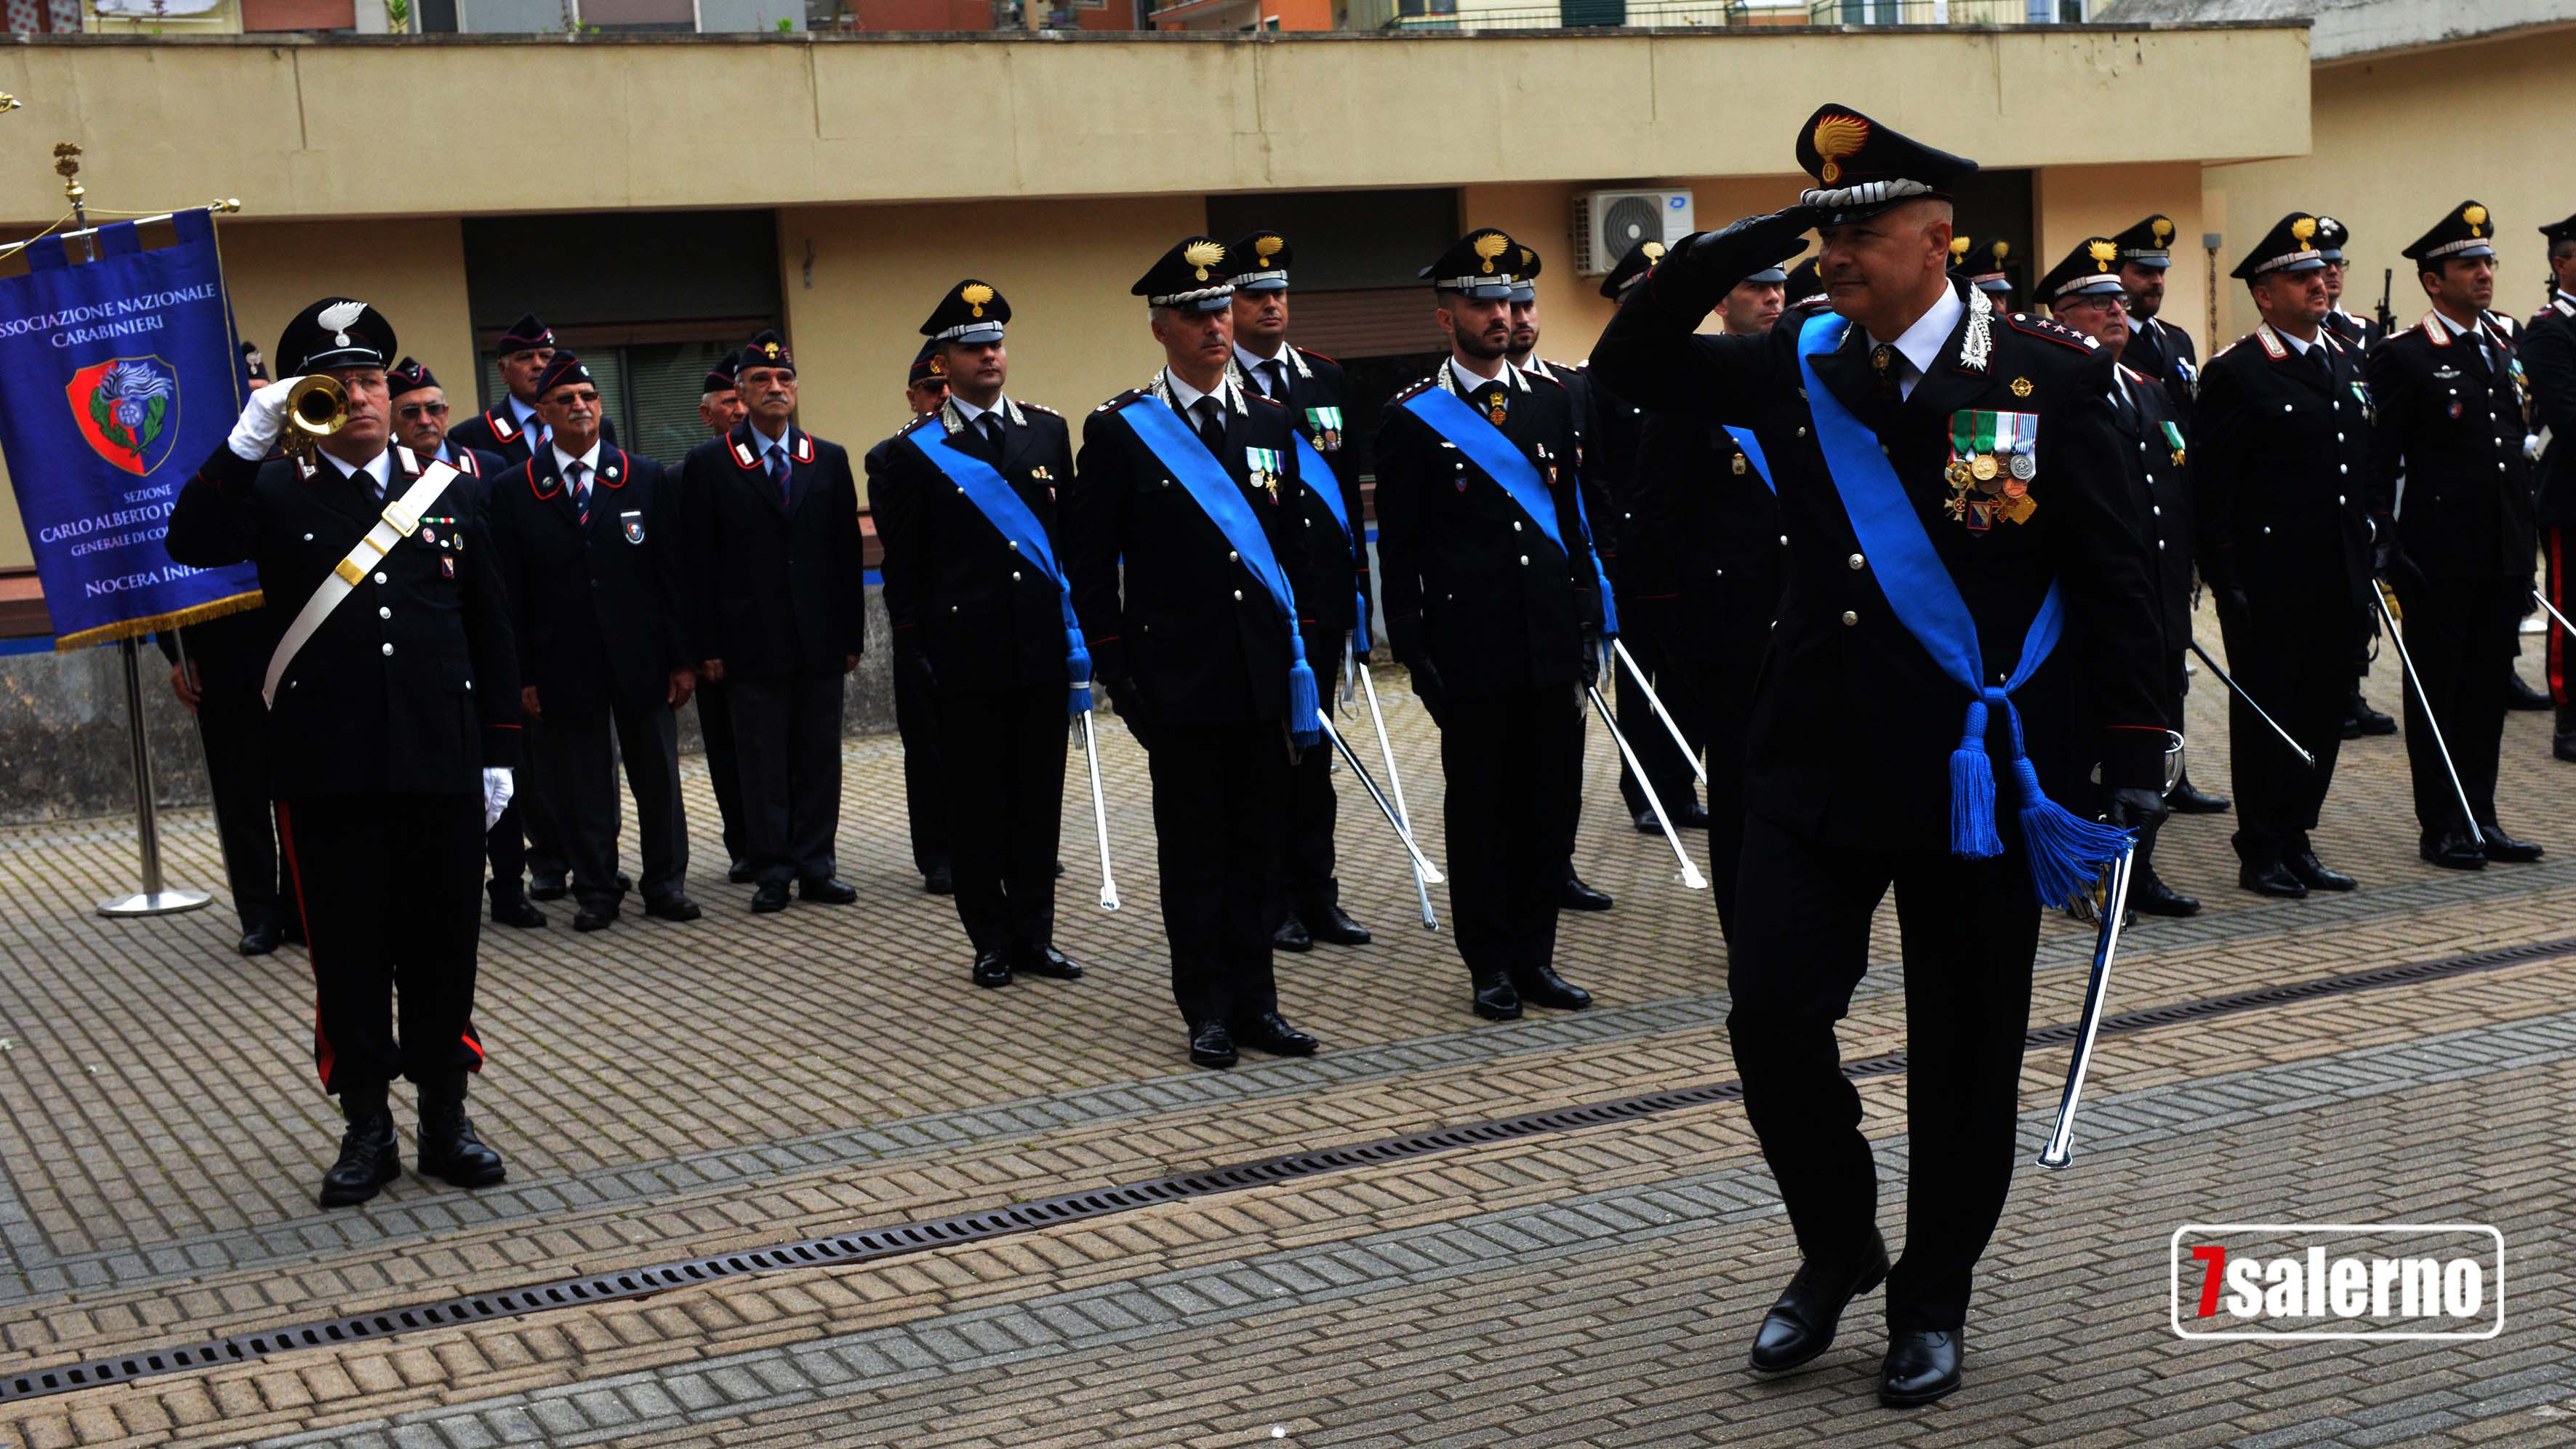 205 anniversario carabinieri Salerno